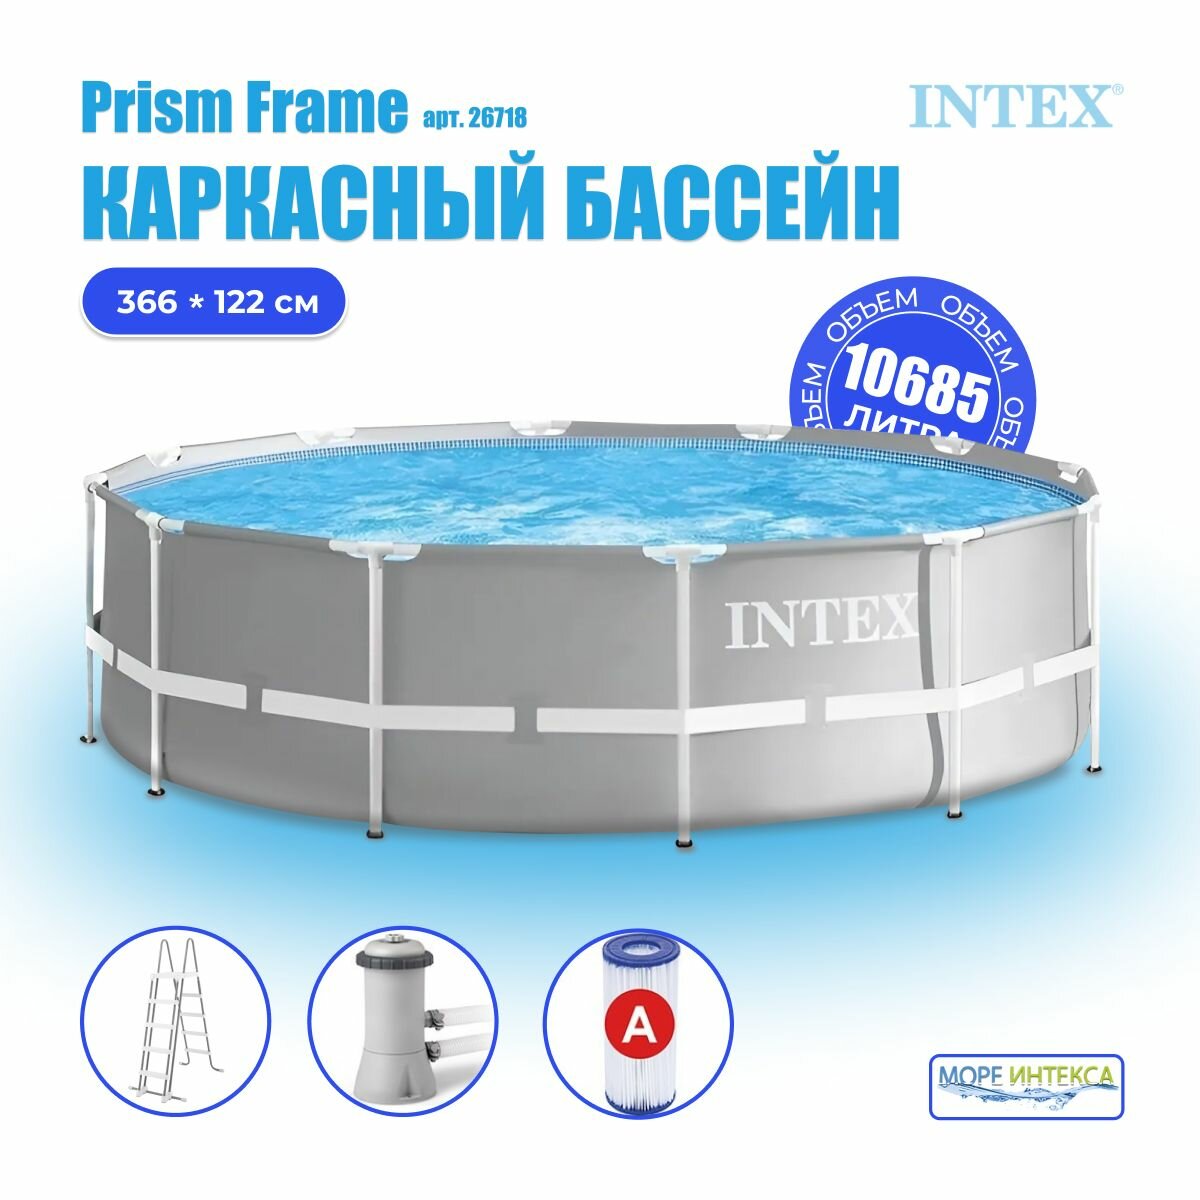 Бассейн Intex Prism Frame 366х122cm 26718